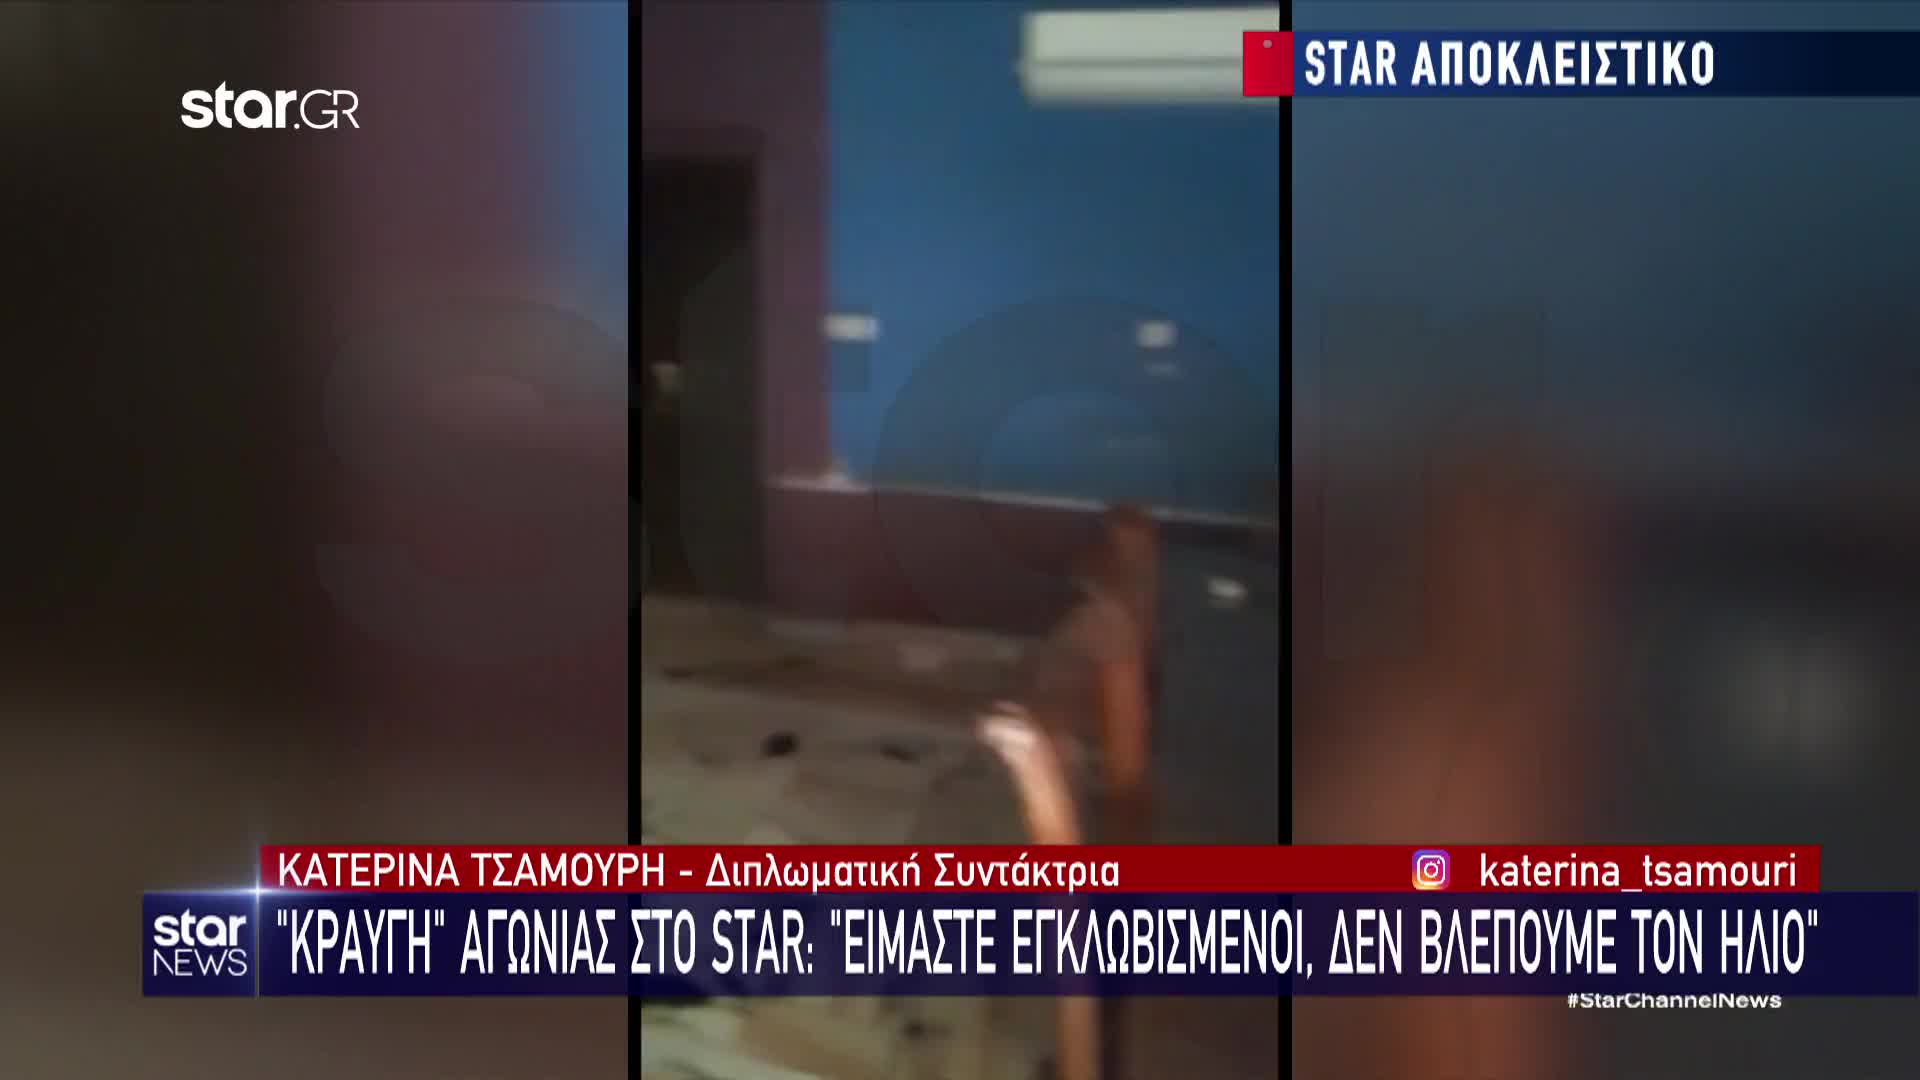 «Δε βλέπουμε τον ήλιο» ήταν η μαρτυρία της Ελληνίδας που είναι εγκλωβισμένη στη Μητρόπολη και μίλησε στο Star 